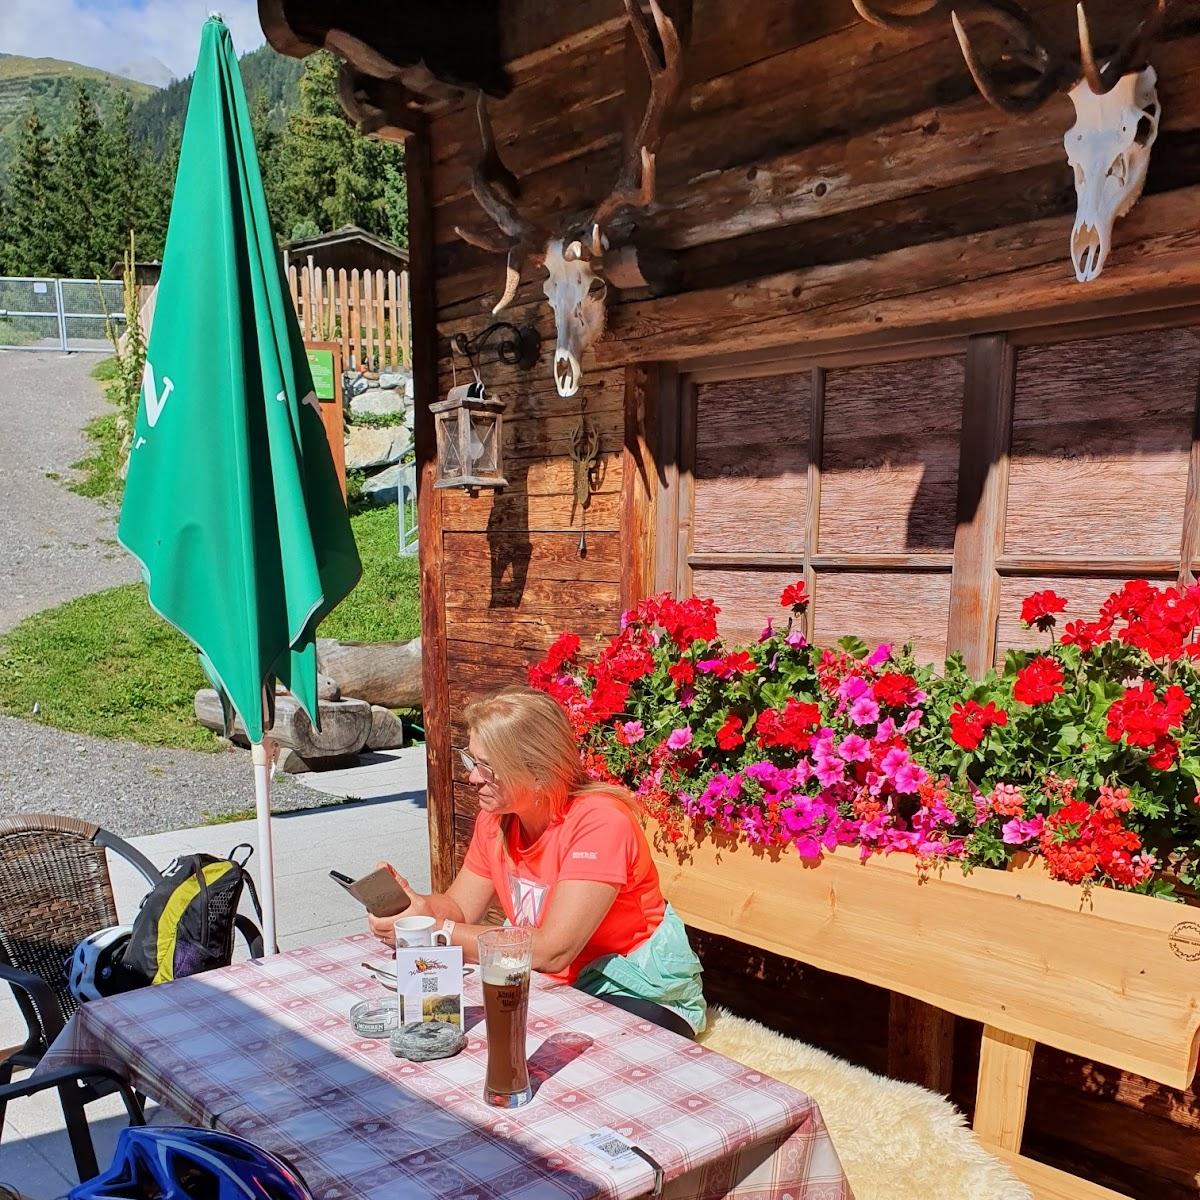 Restaurant "Wildererhütte Familie Ganahl" in Mathon